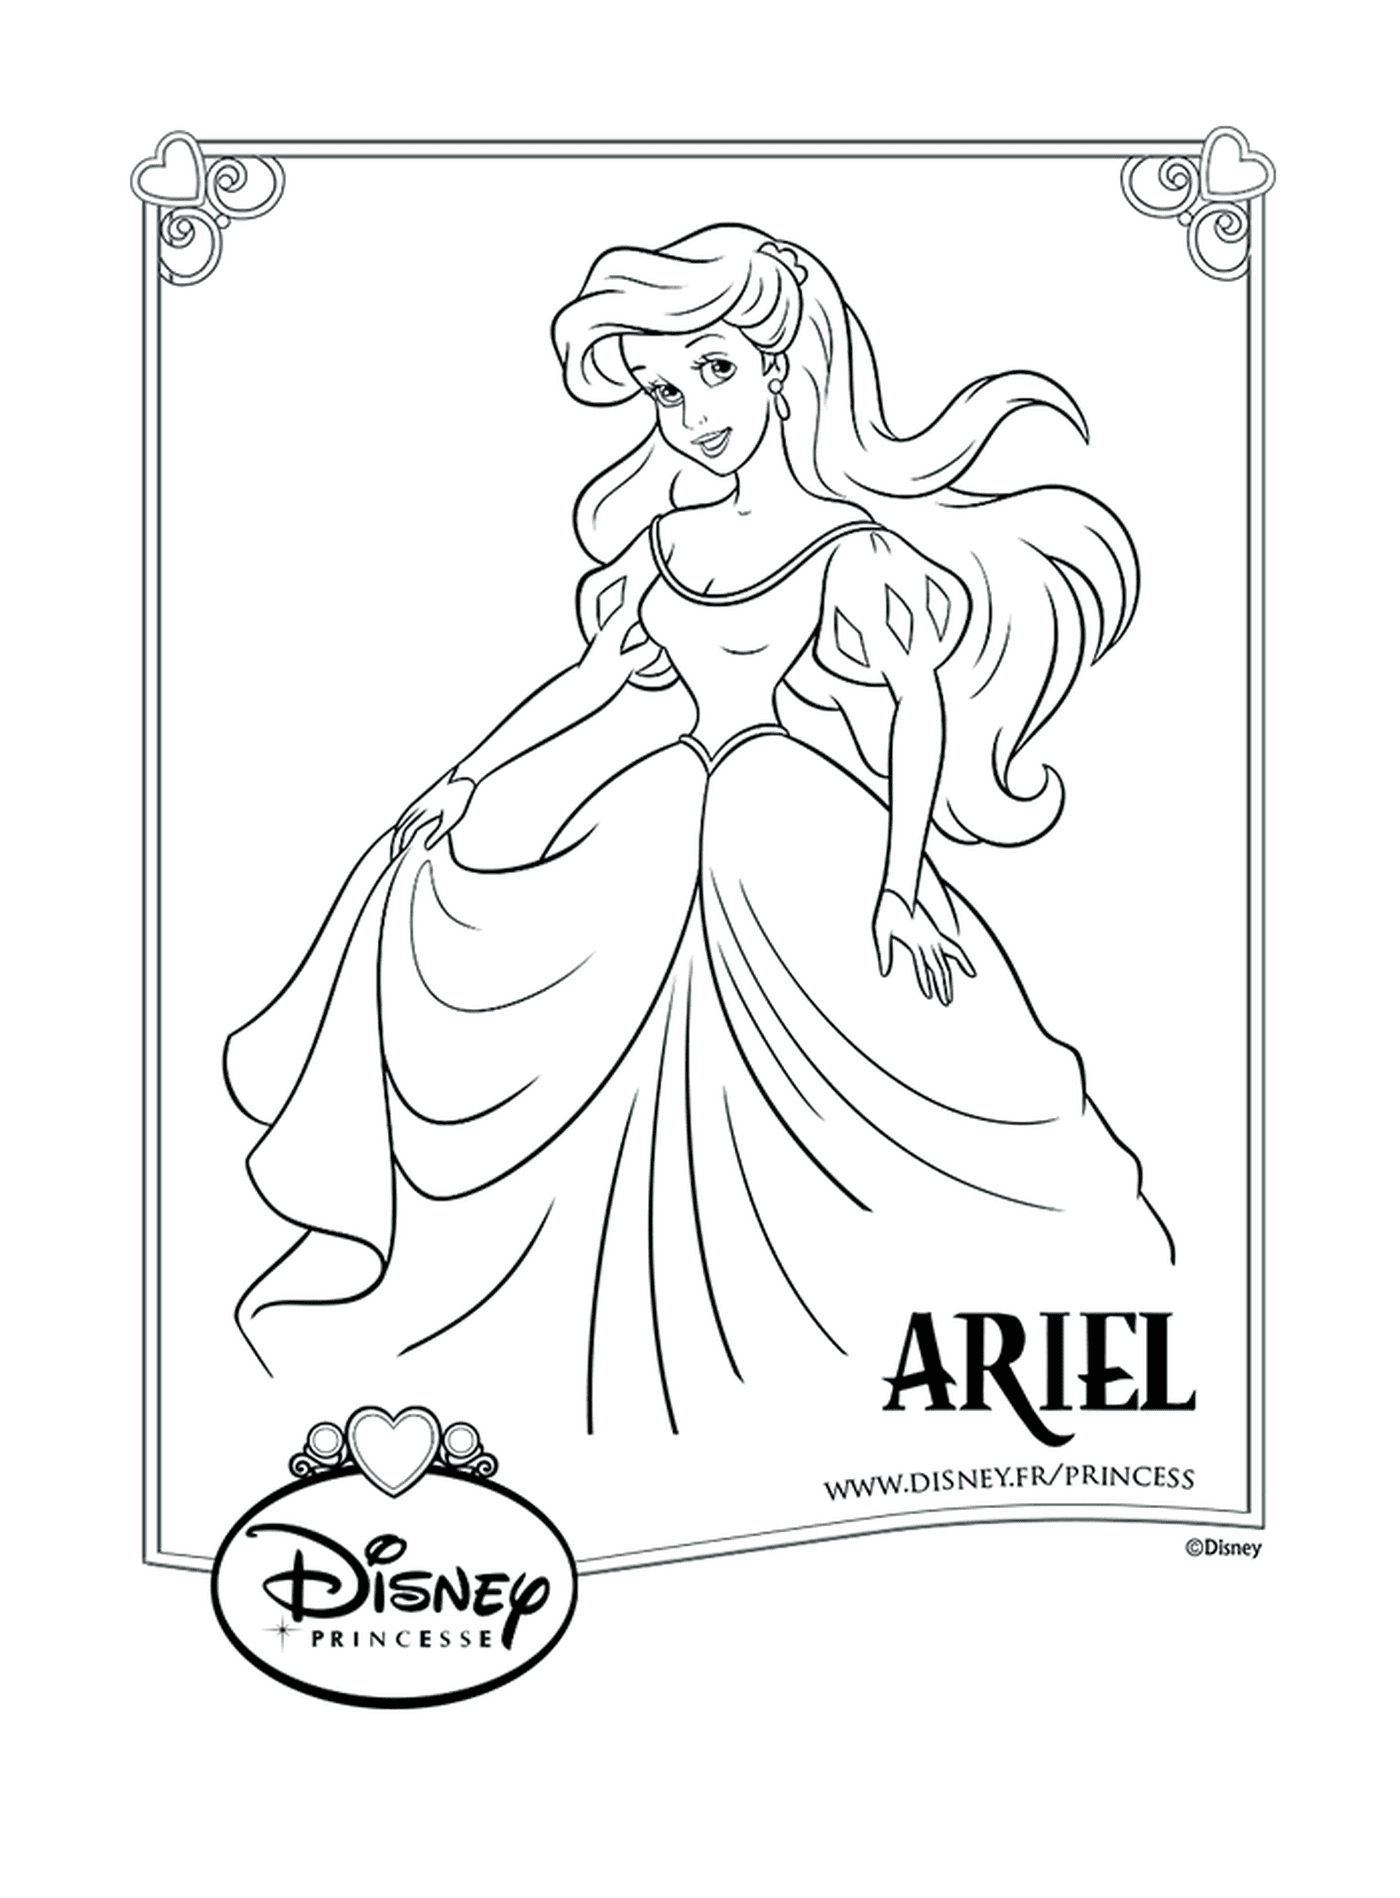   Ariel, une jeune fille aux longs cheveux 